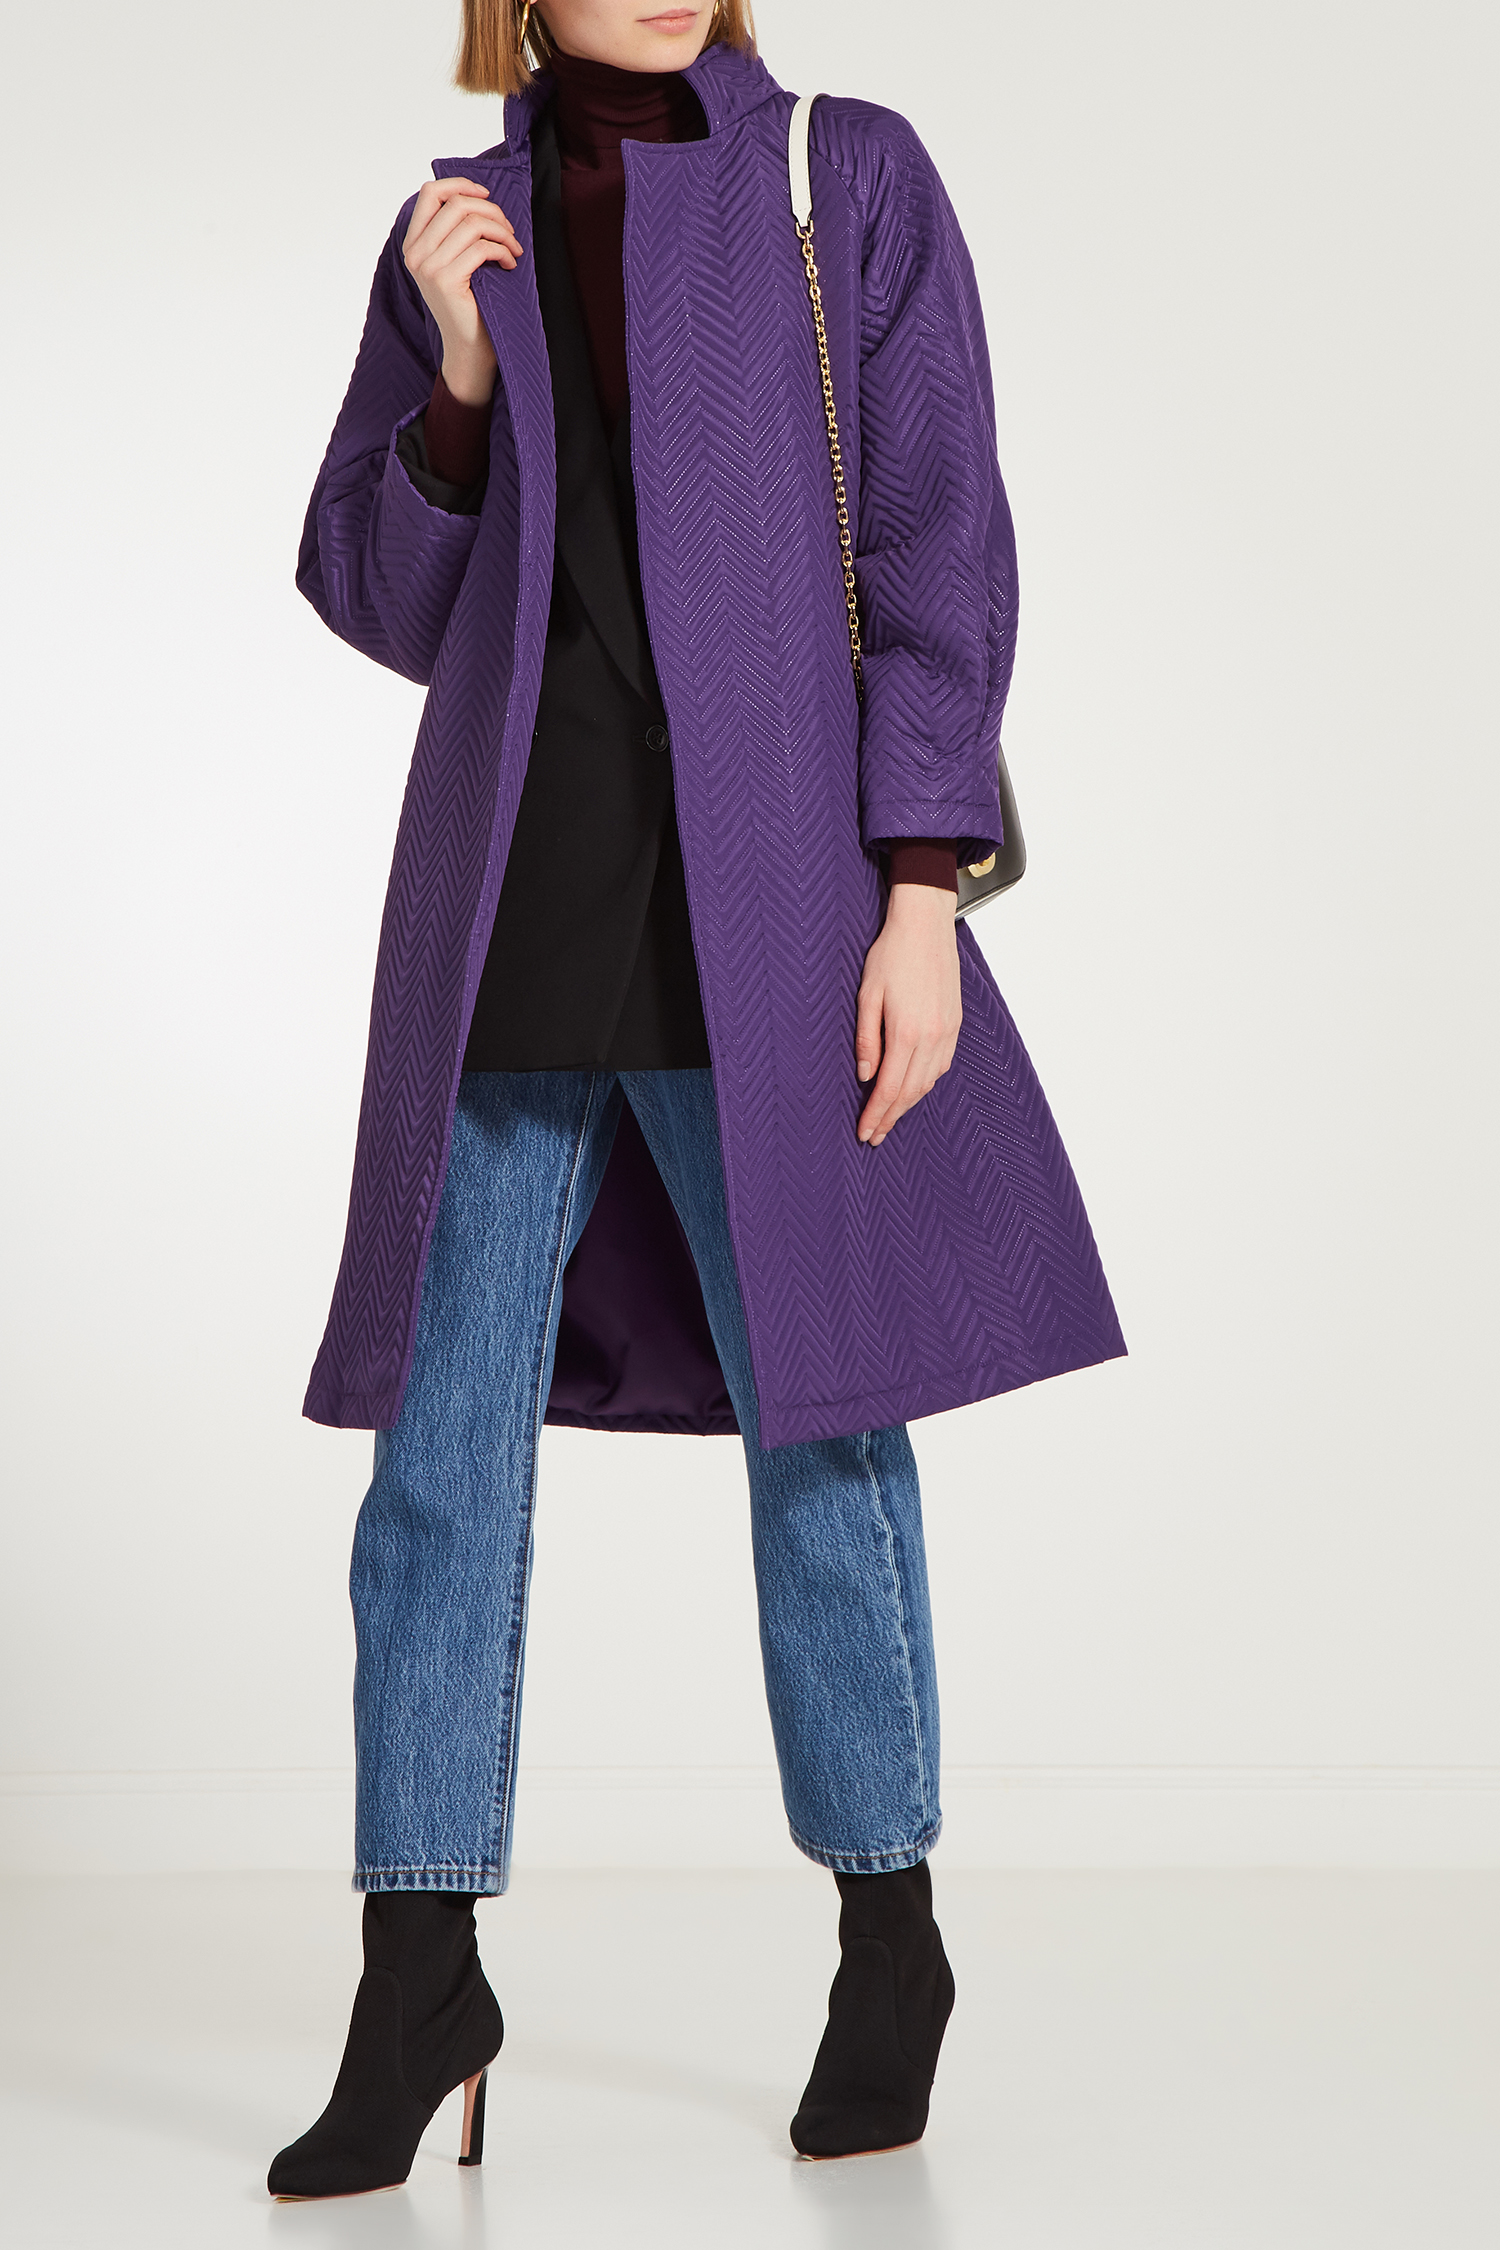 

Пальто с поясом MILAMARSEL, Фиолетовый